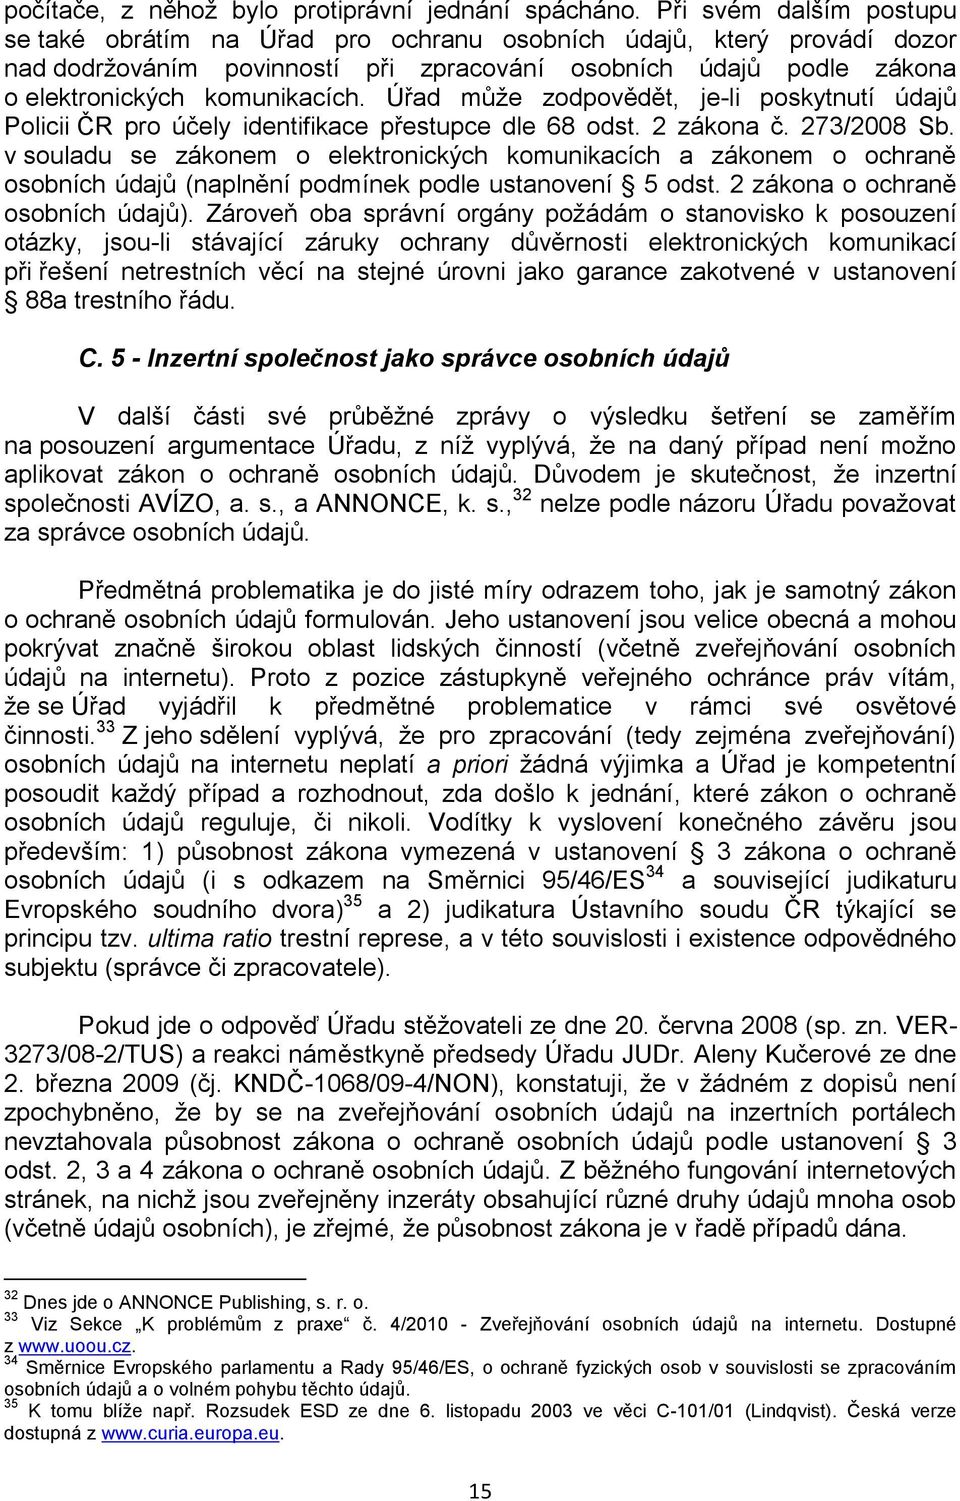 Úřad můţe zodpovědět, je-li poskytnutí údajů Policii ČR pro účely identifikace přestupce dle 68 odst. 2 zákona č. 273/2008 Sb.